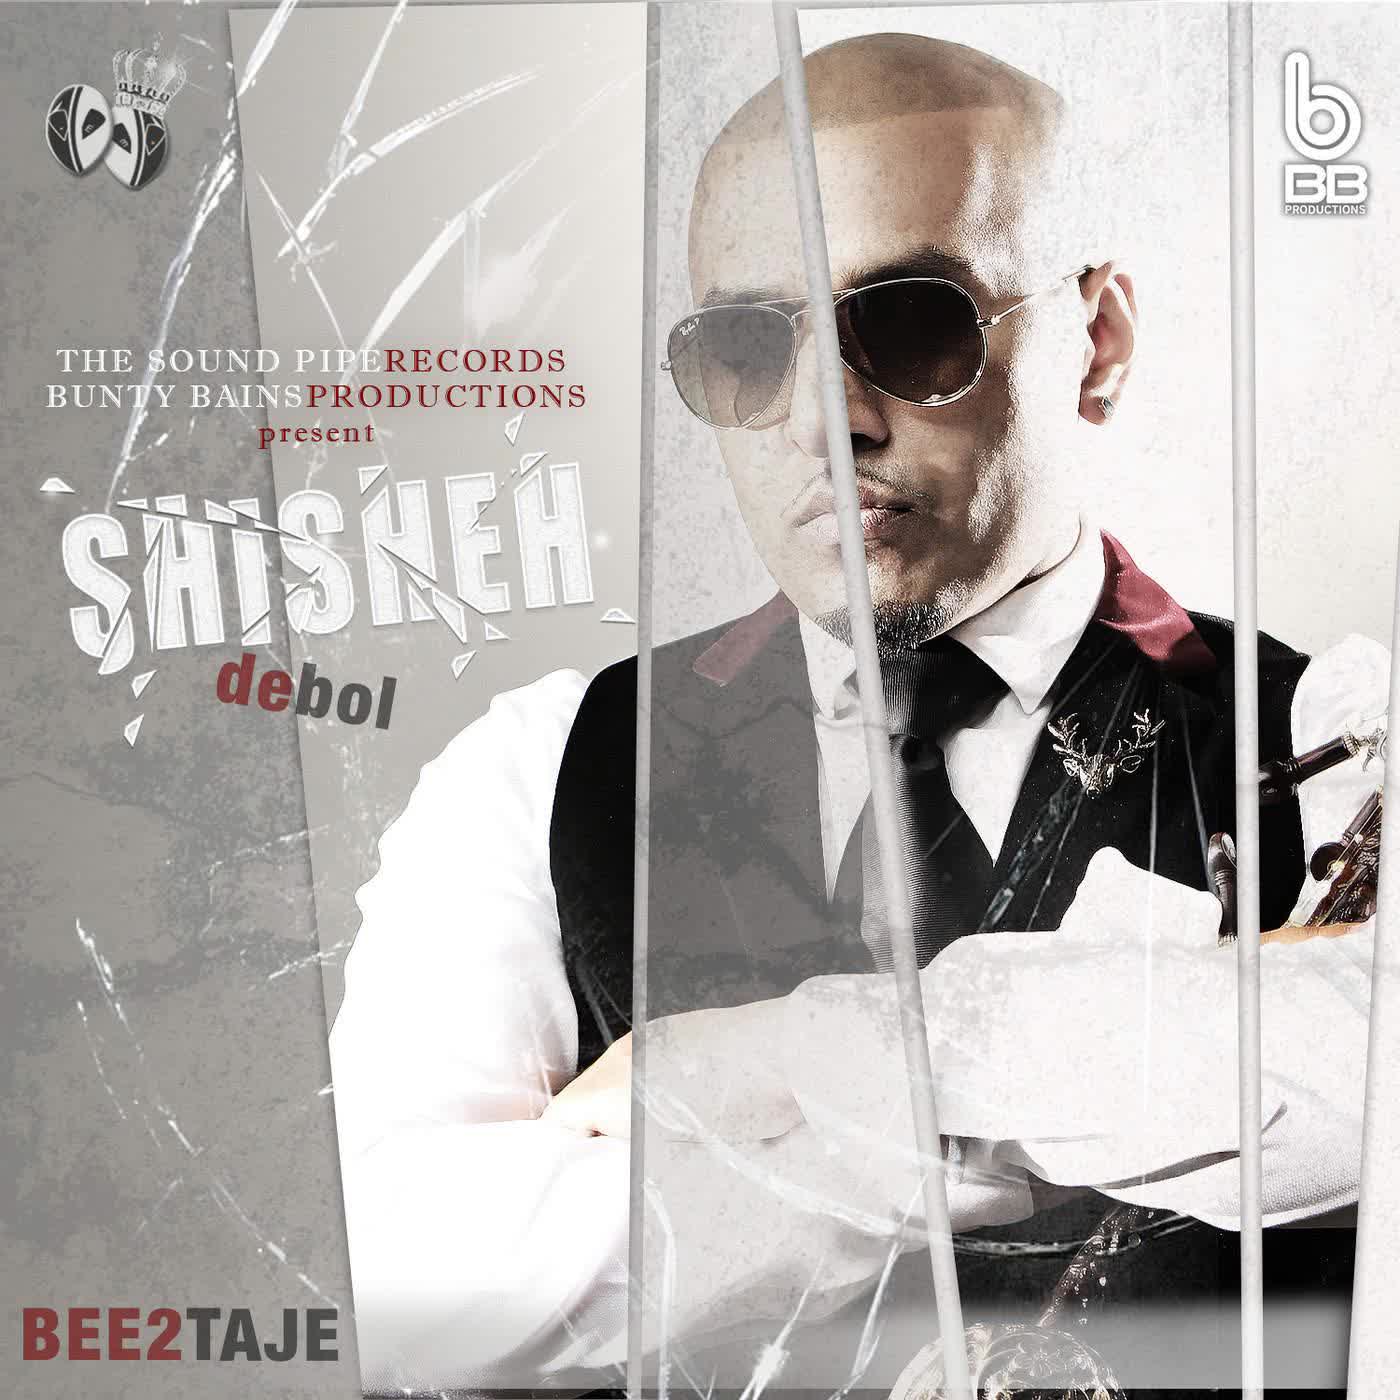 Shisheh De Bol Bee 2 Mp3 song download